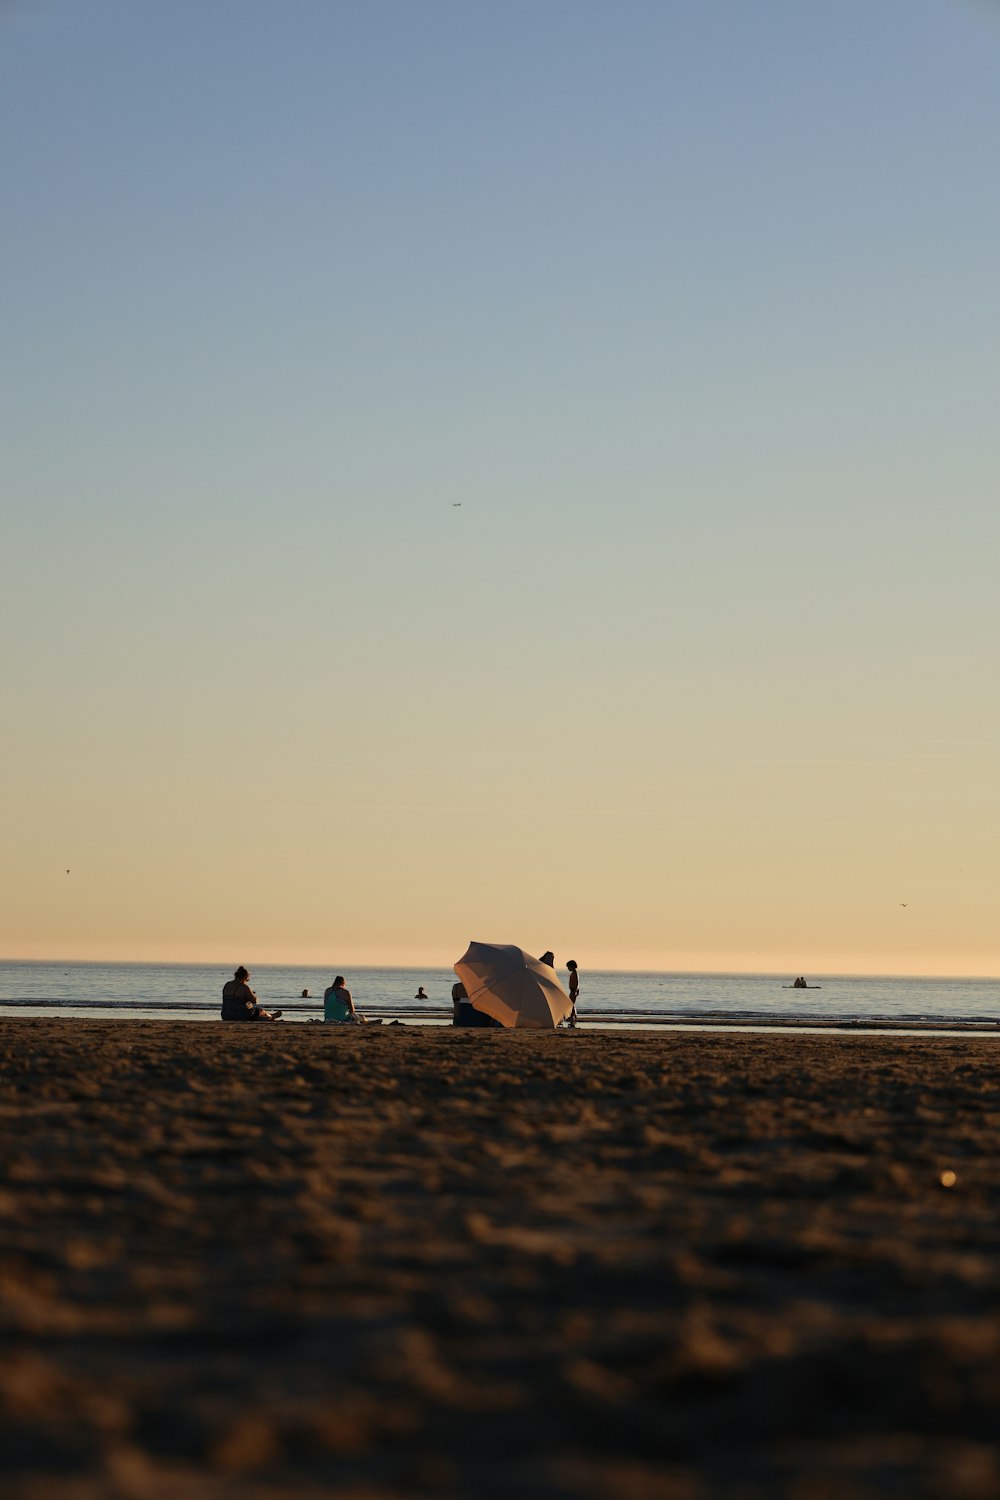 Un gruppo di persone in piedi sulla cima di una spiaggia sabbiosa